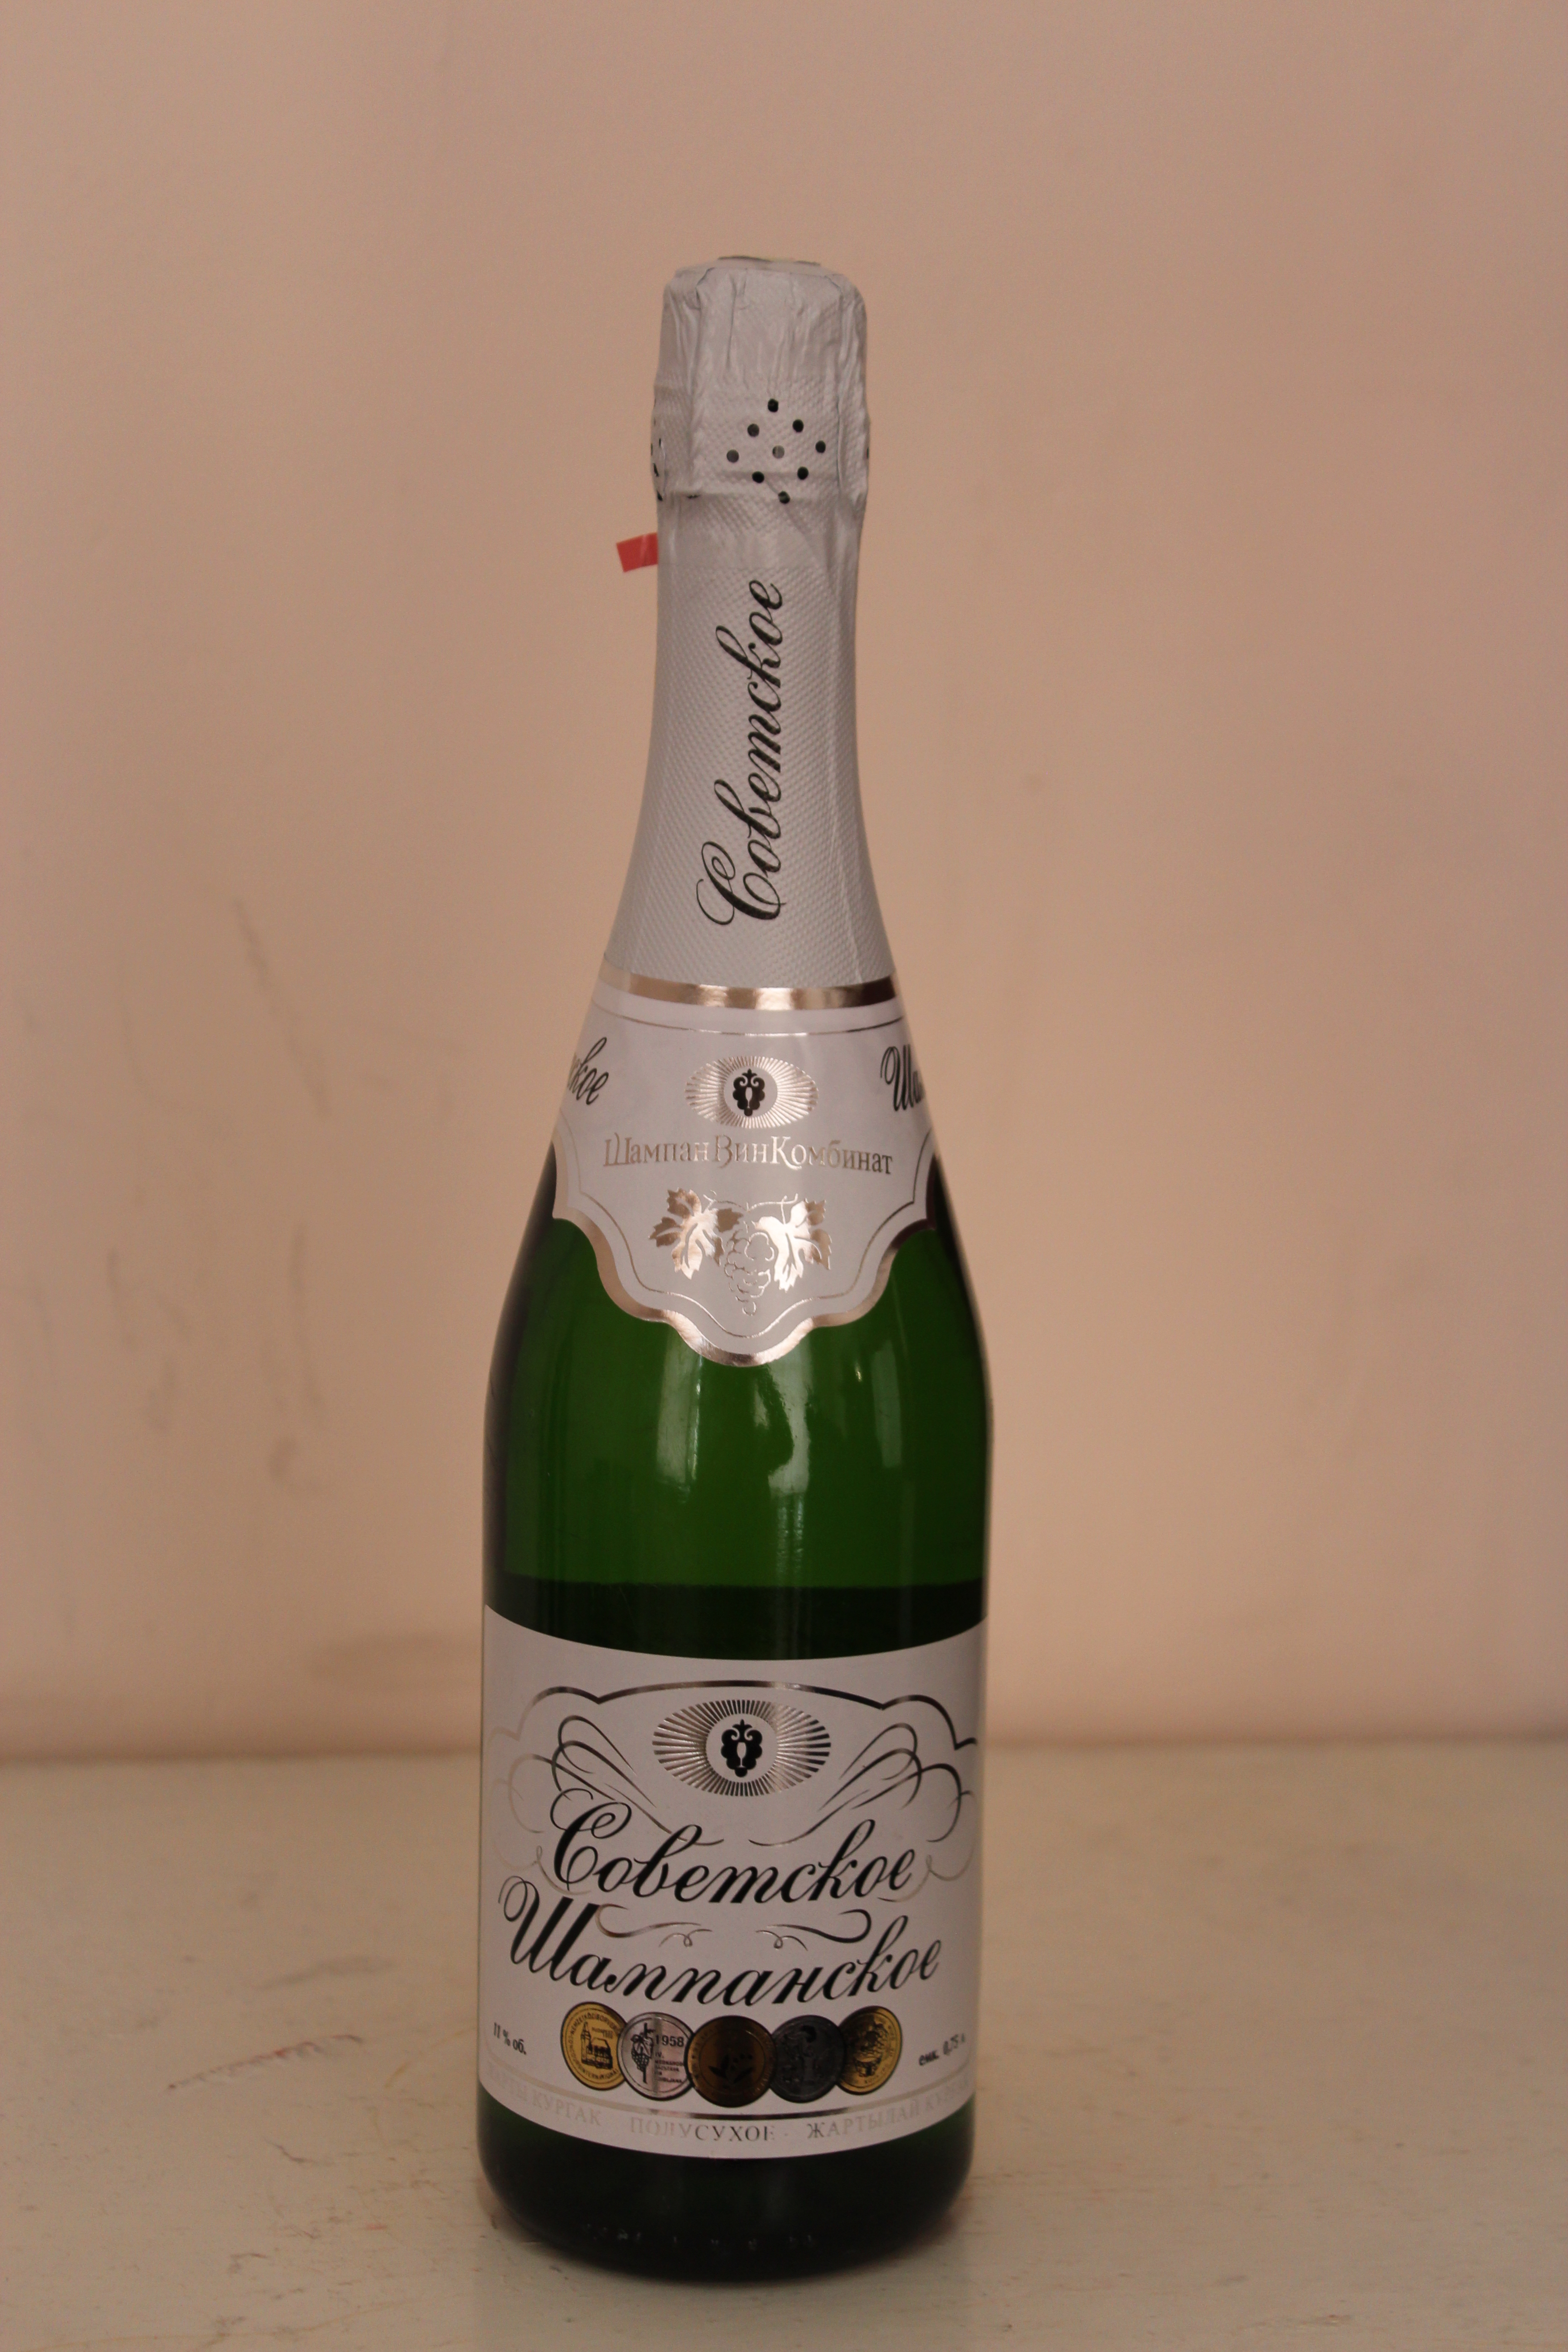 Бутылка советского шампанского